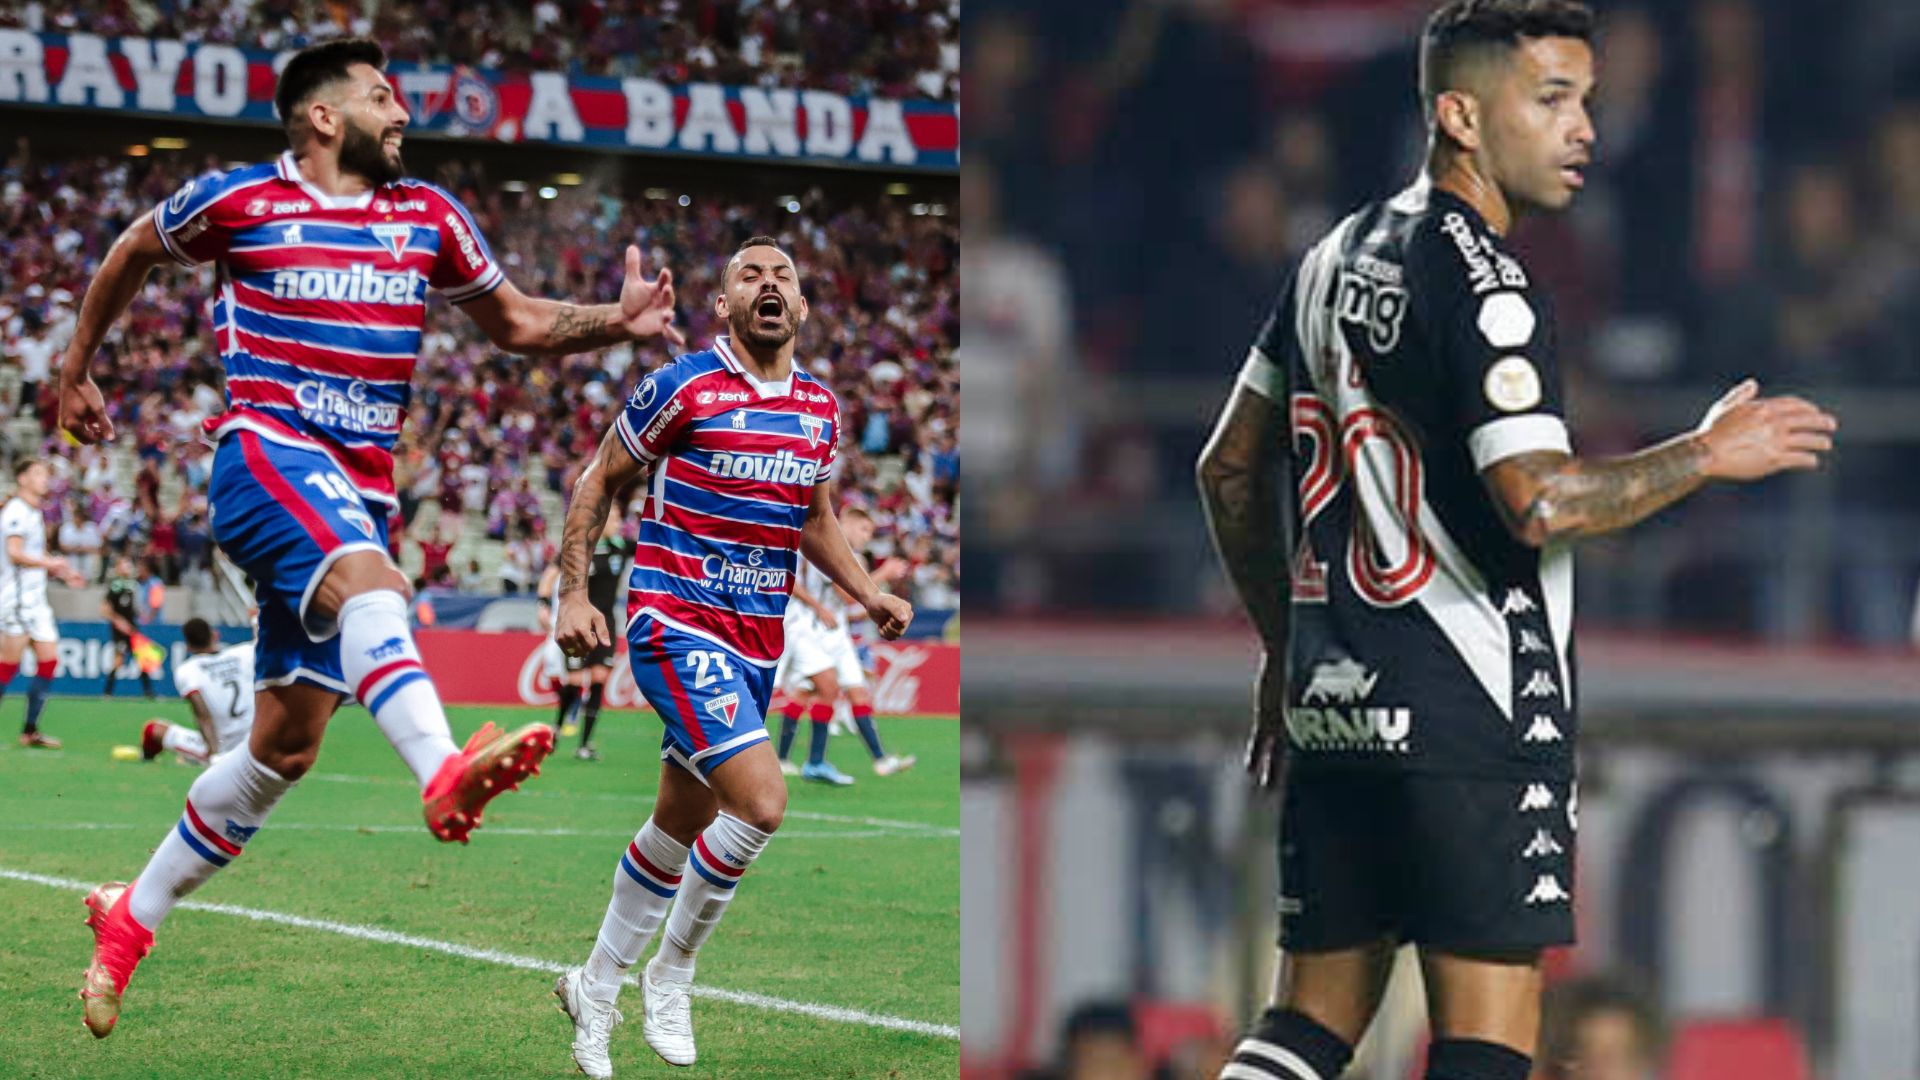 Veja os próximos jogos do Vasco, Sport, Bahia e Fortaleza